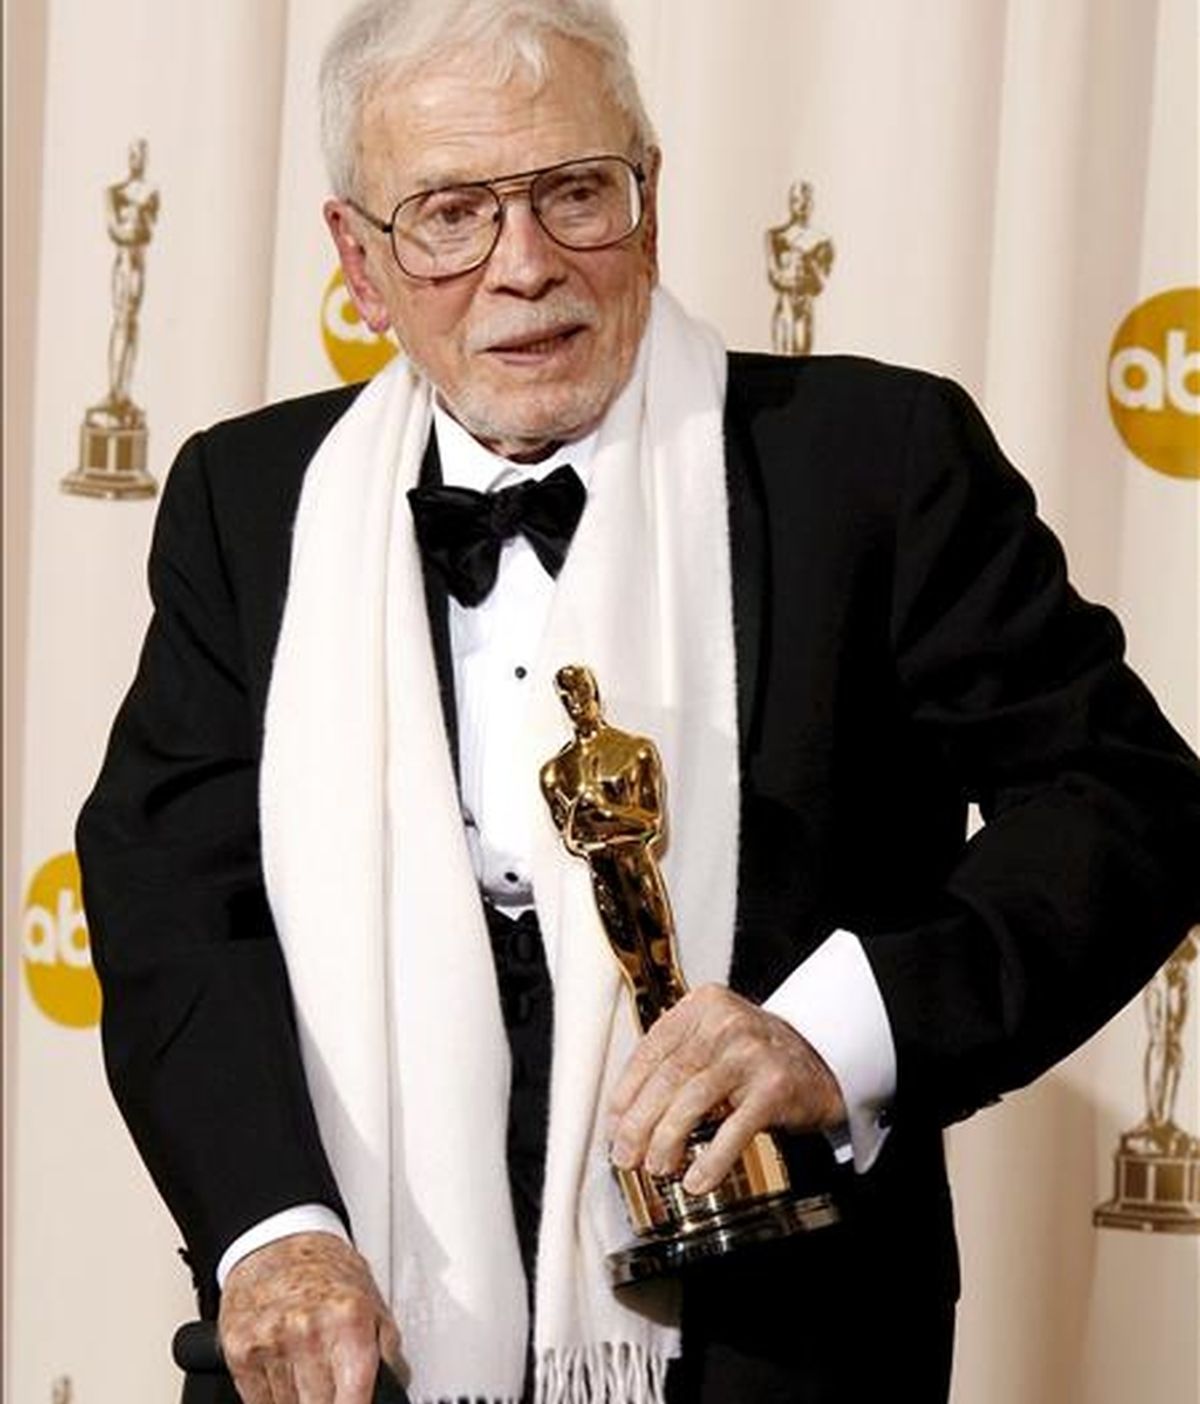 Fotografía de archivo fechada el 24 de febrero de 2008 que muestra al director de Arte Robert F. Boyle con su Óscar honorífico en la 80 entrega del Oscar en el teatro Kodak en Hollywood, California. EFE/Archivo